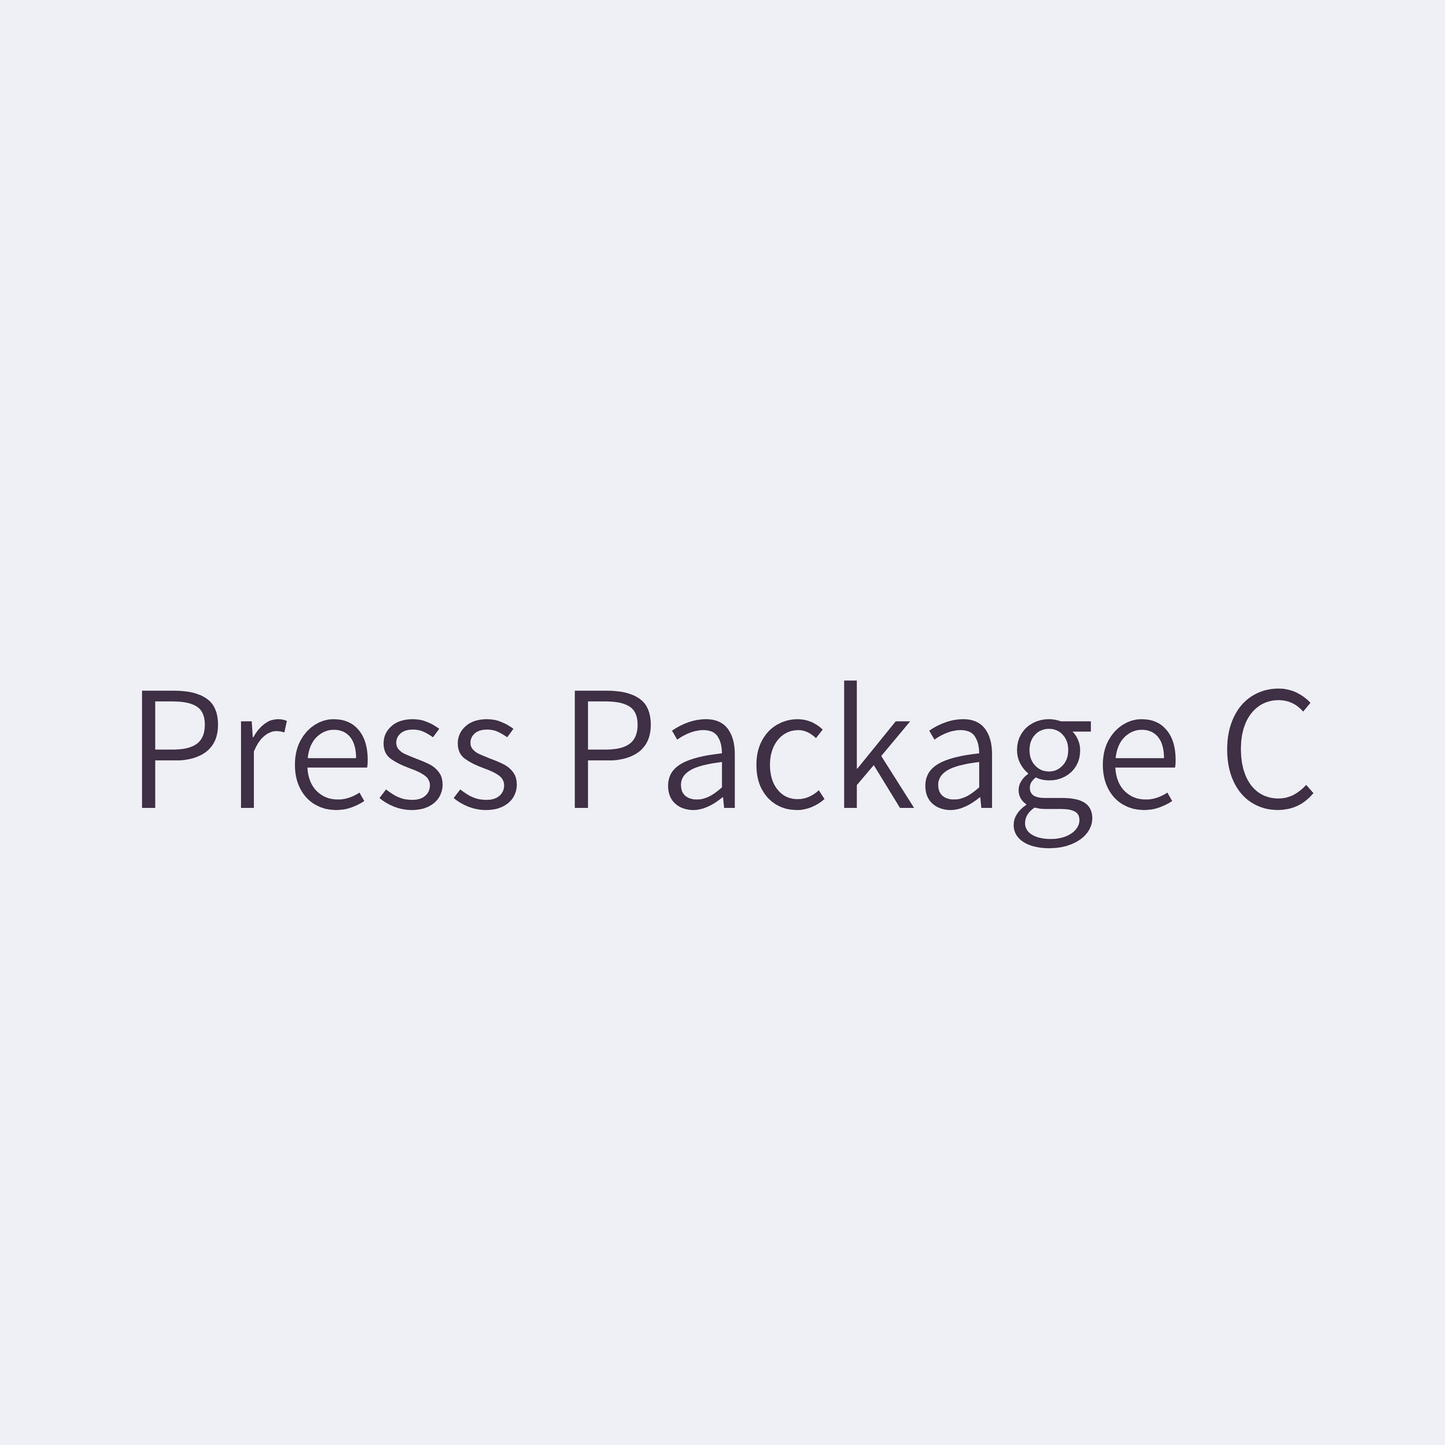 Press Package C